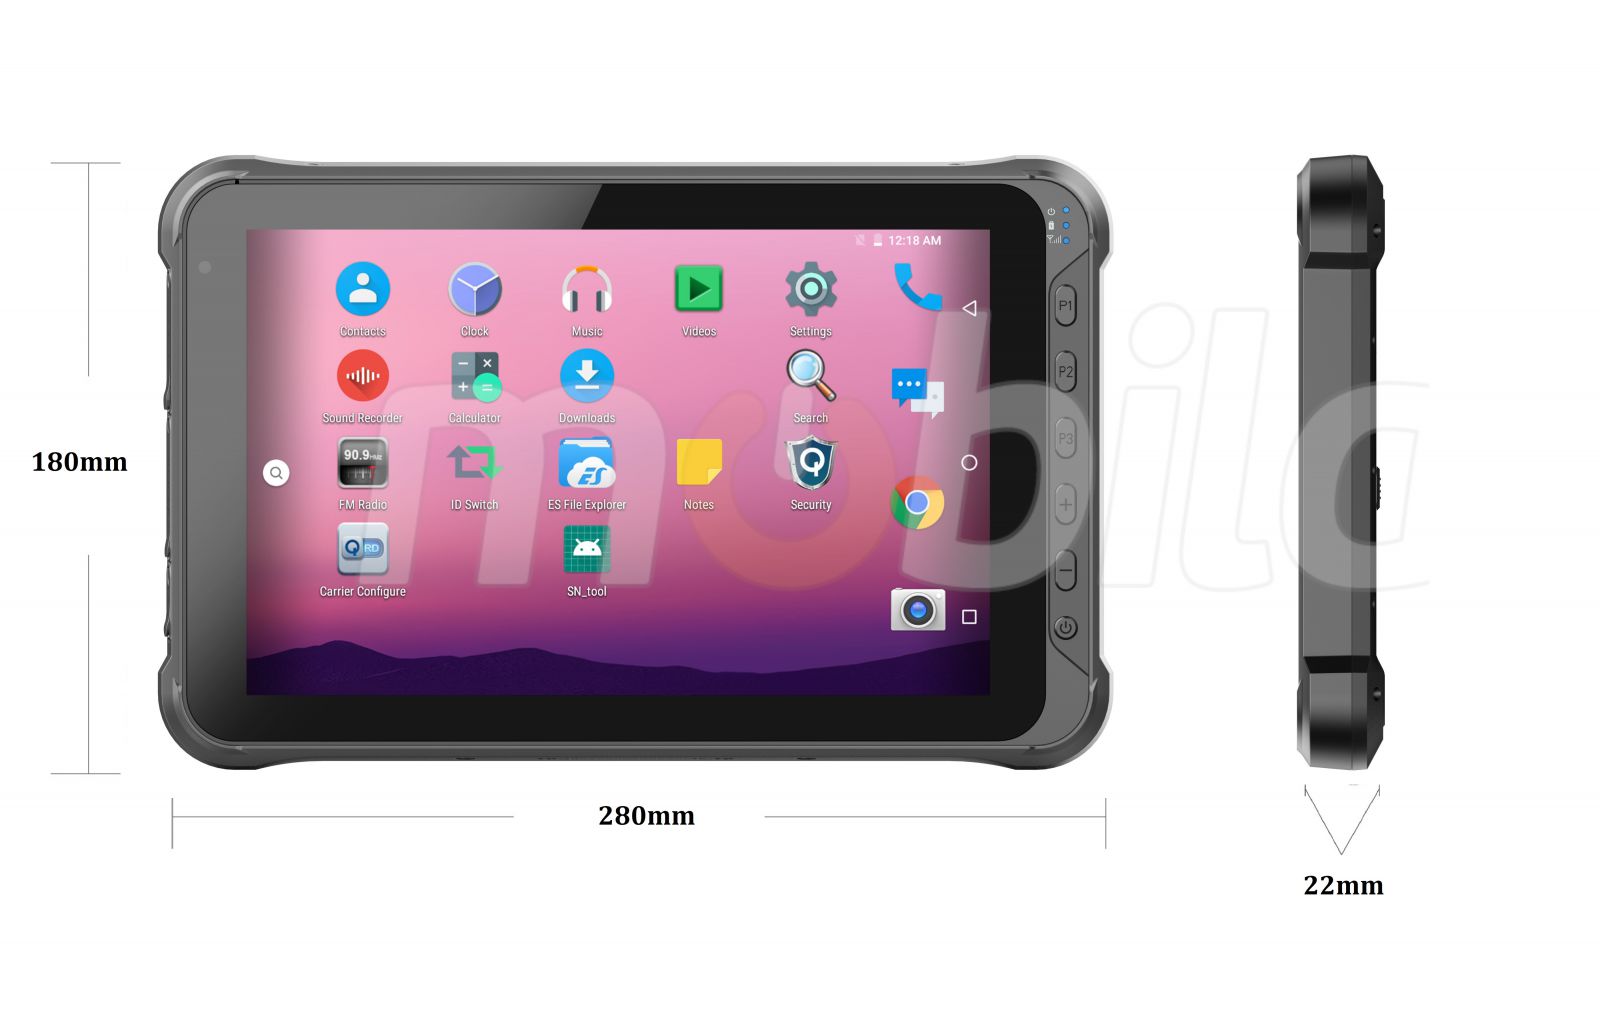 Pyoodporny 10-calowy tablet z czytnikiem kodw kreskowych 1D Honeywell oraz UHF RFID, normami IP65 + MIL-STD-810G, pamici 4GB RAM, 64GB ROM, BT4.1 - Emdoor Q15P v.6